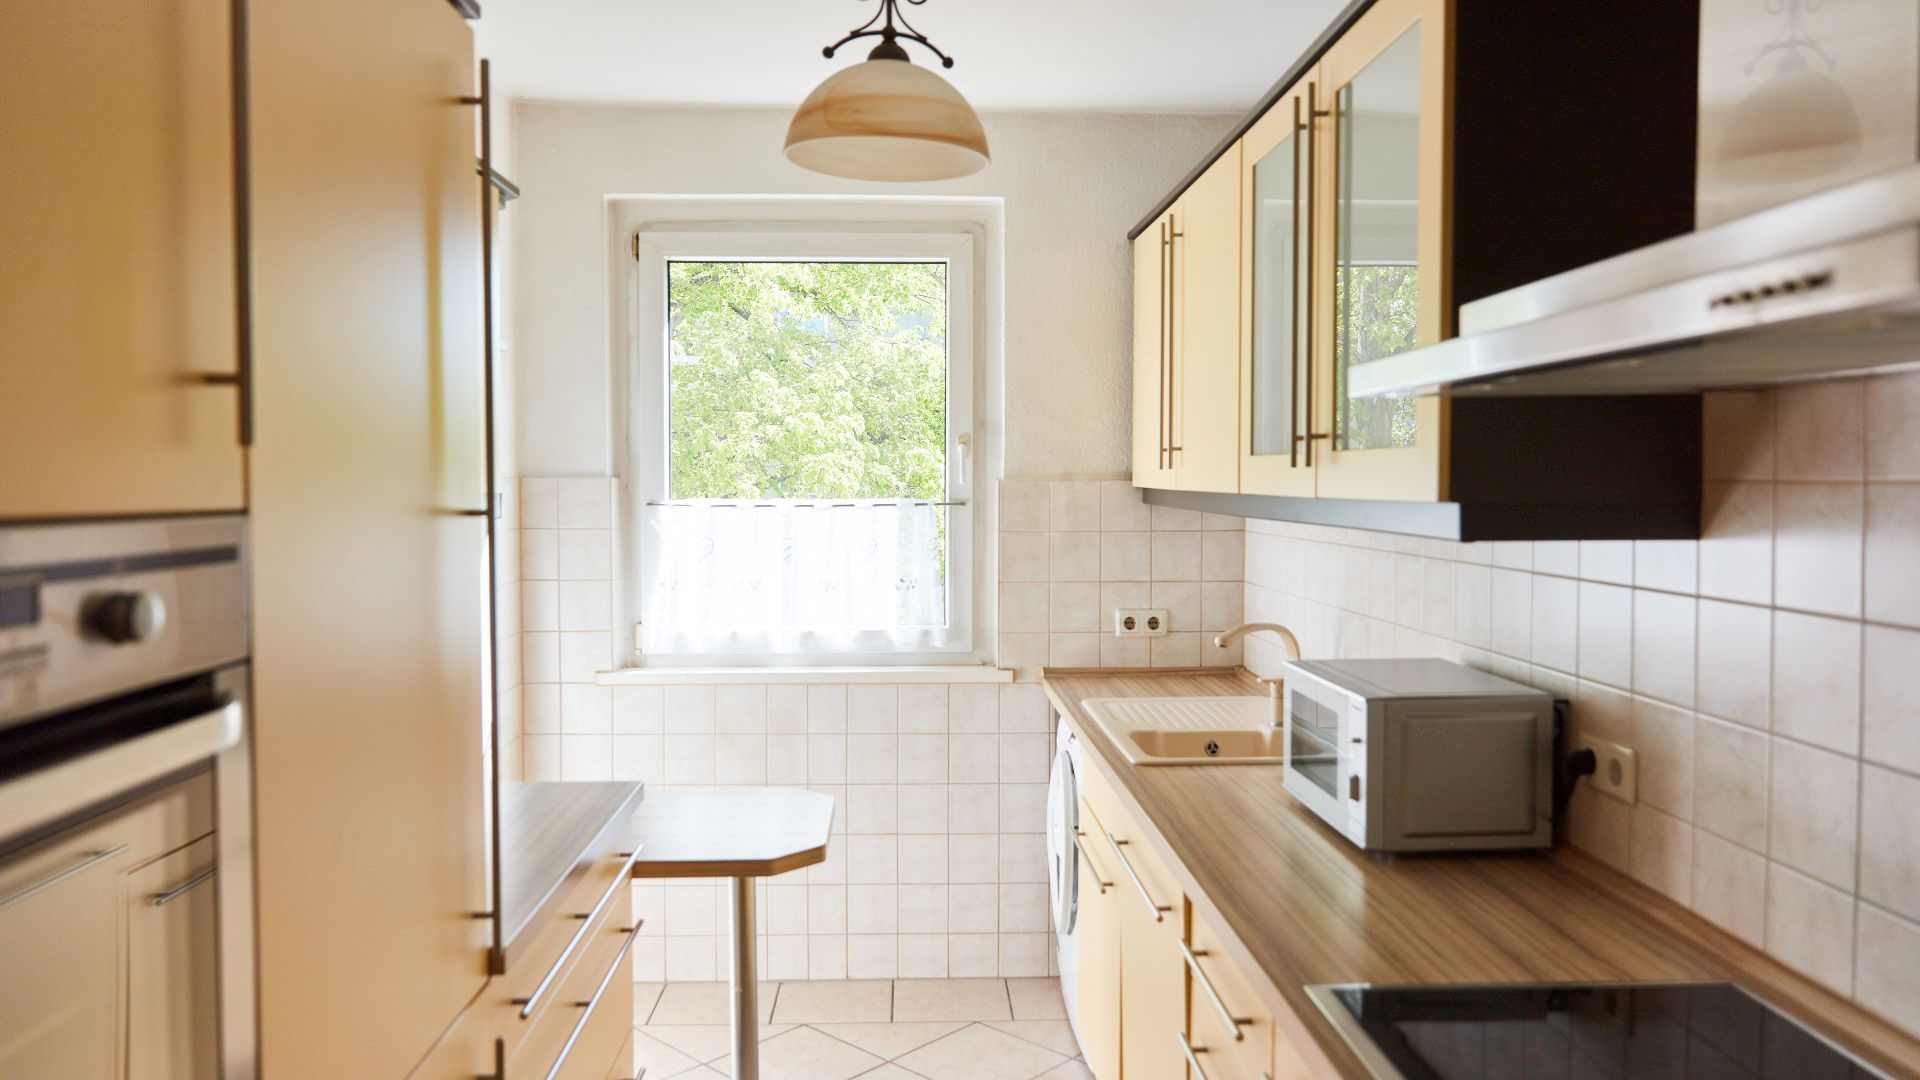 Mẫu 1: Thiết kế nội thất bếp chung cư nhỏ hiện đại